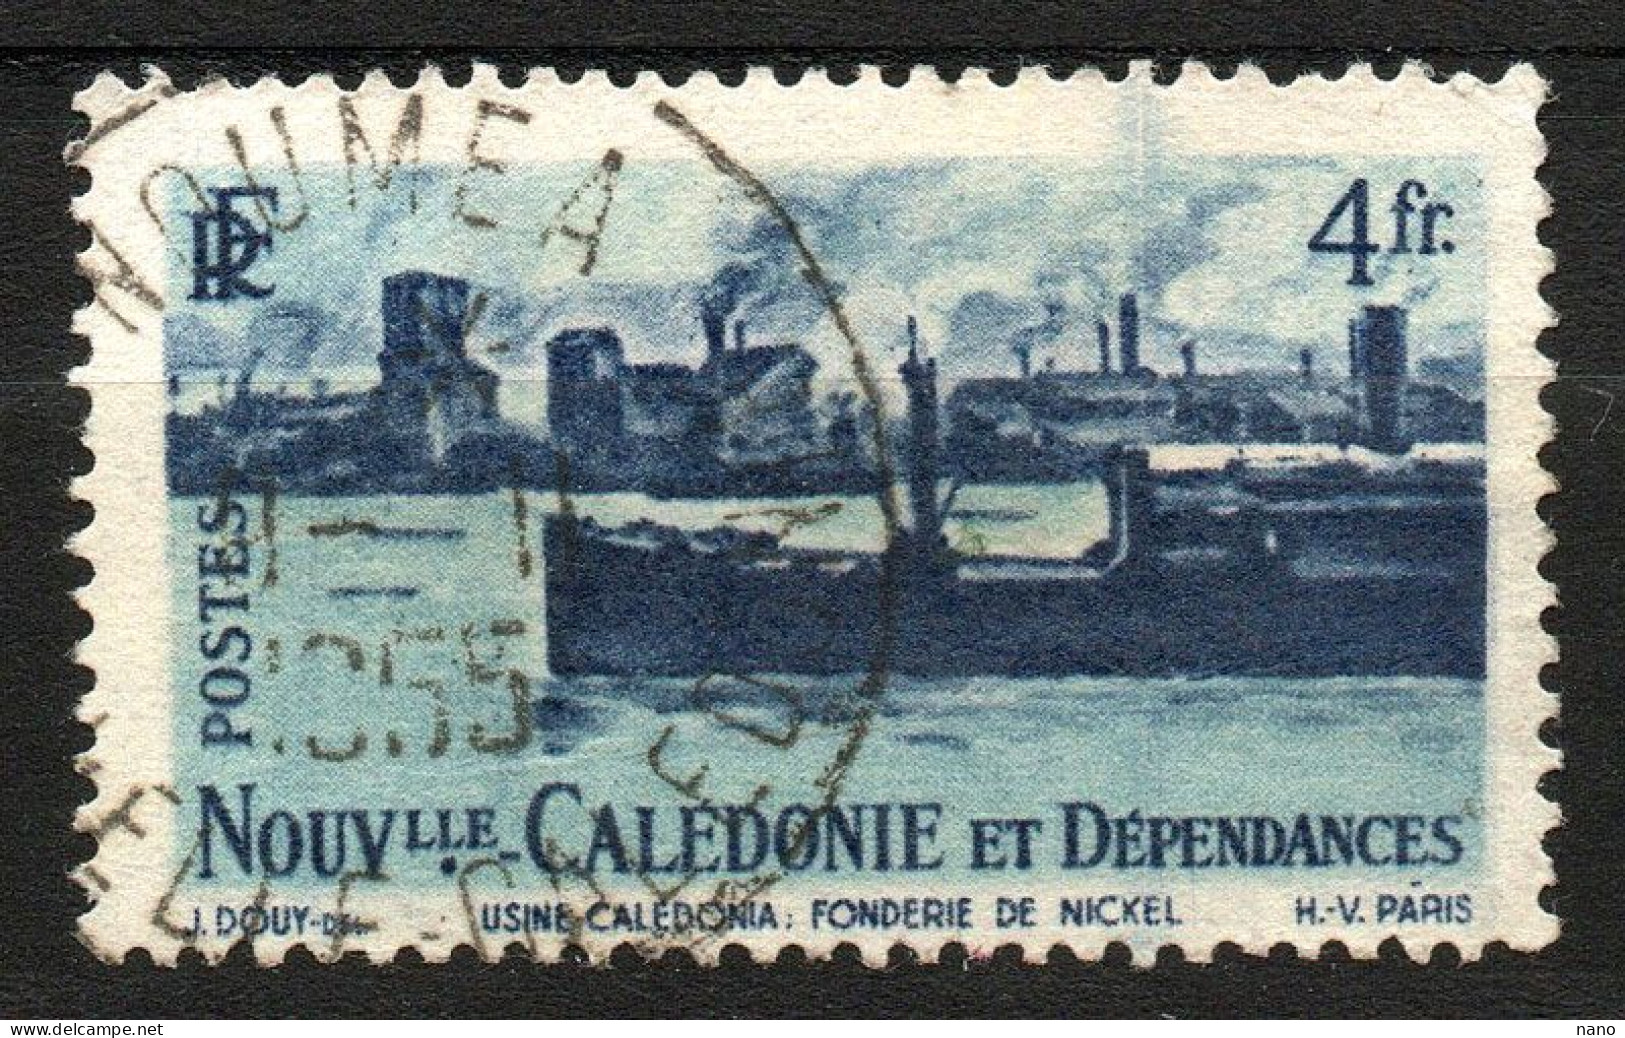 NOUVELLE-CALEDONIE - Y&T N° 271 - 4 Fr. Fonderie De Nickel - Année 1948 - Gebruikt